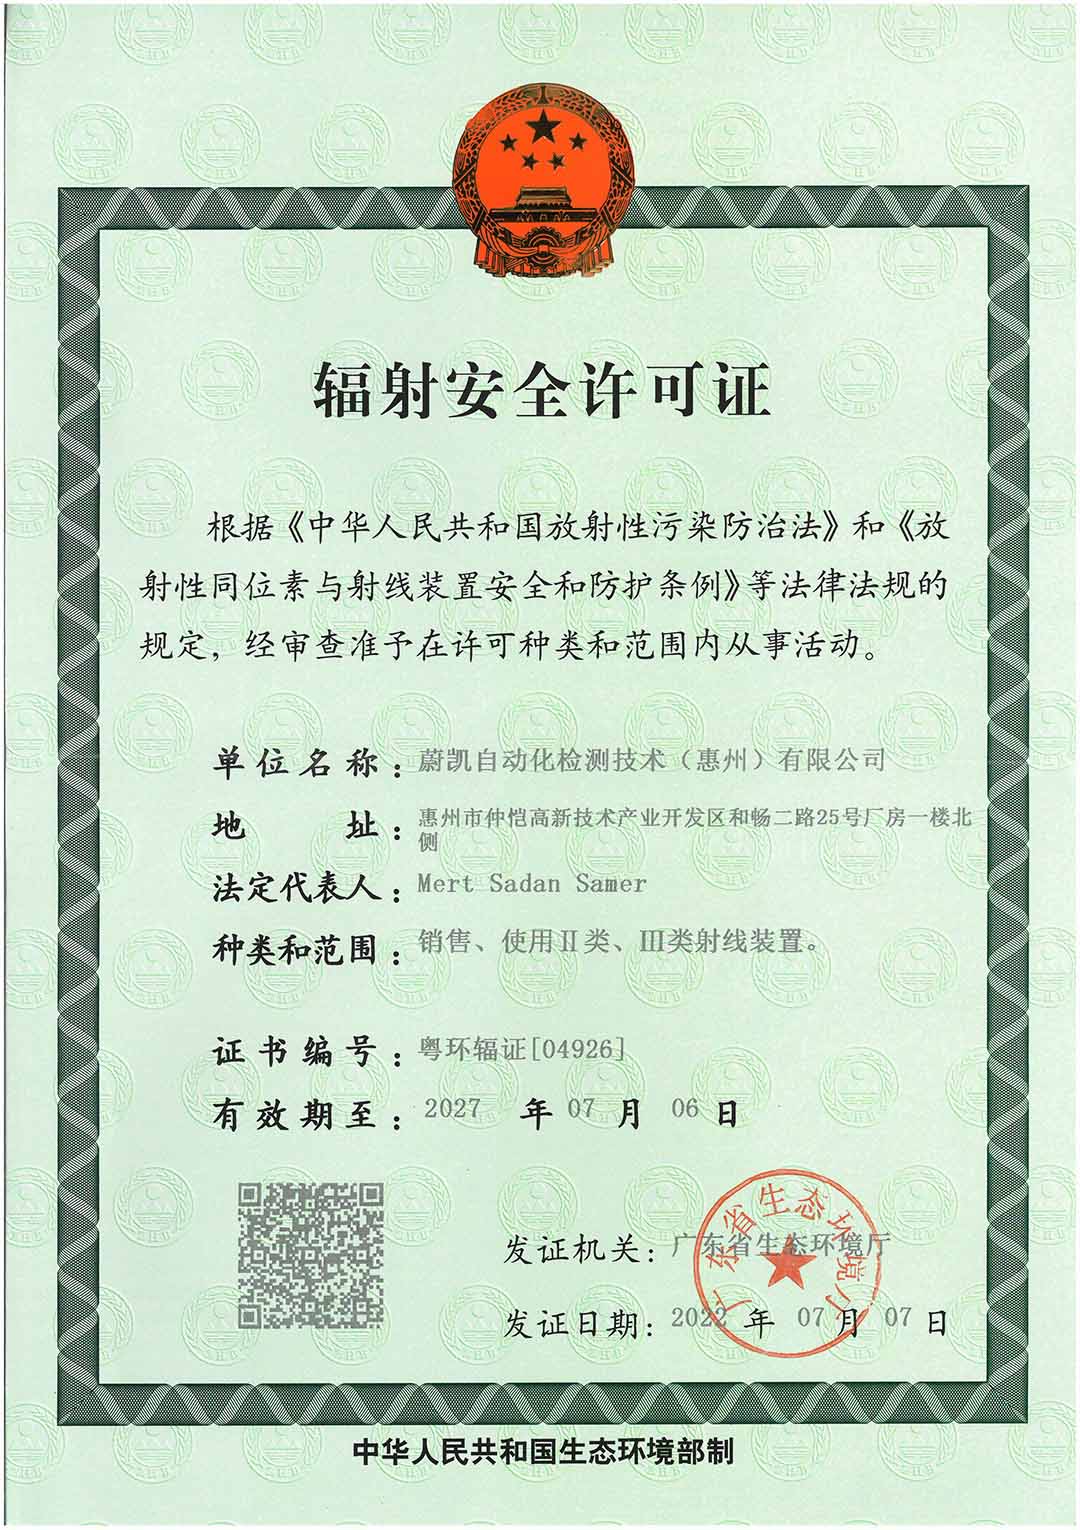 蔚凯自动化检测技术（惠州）有限公司